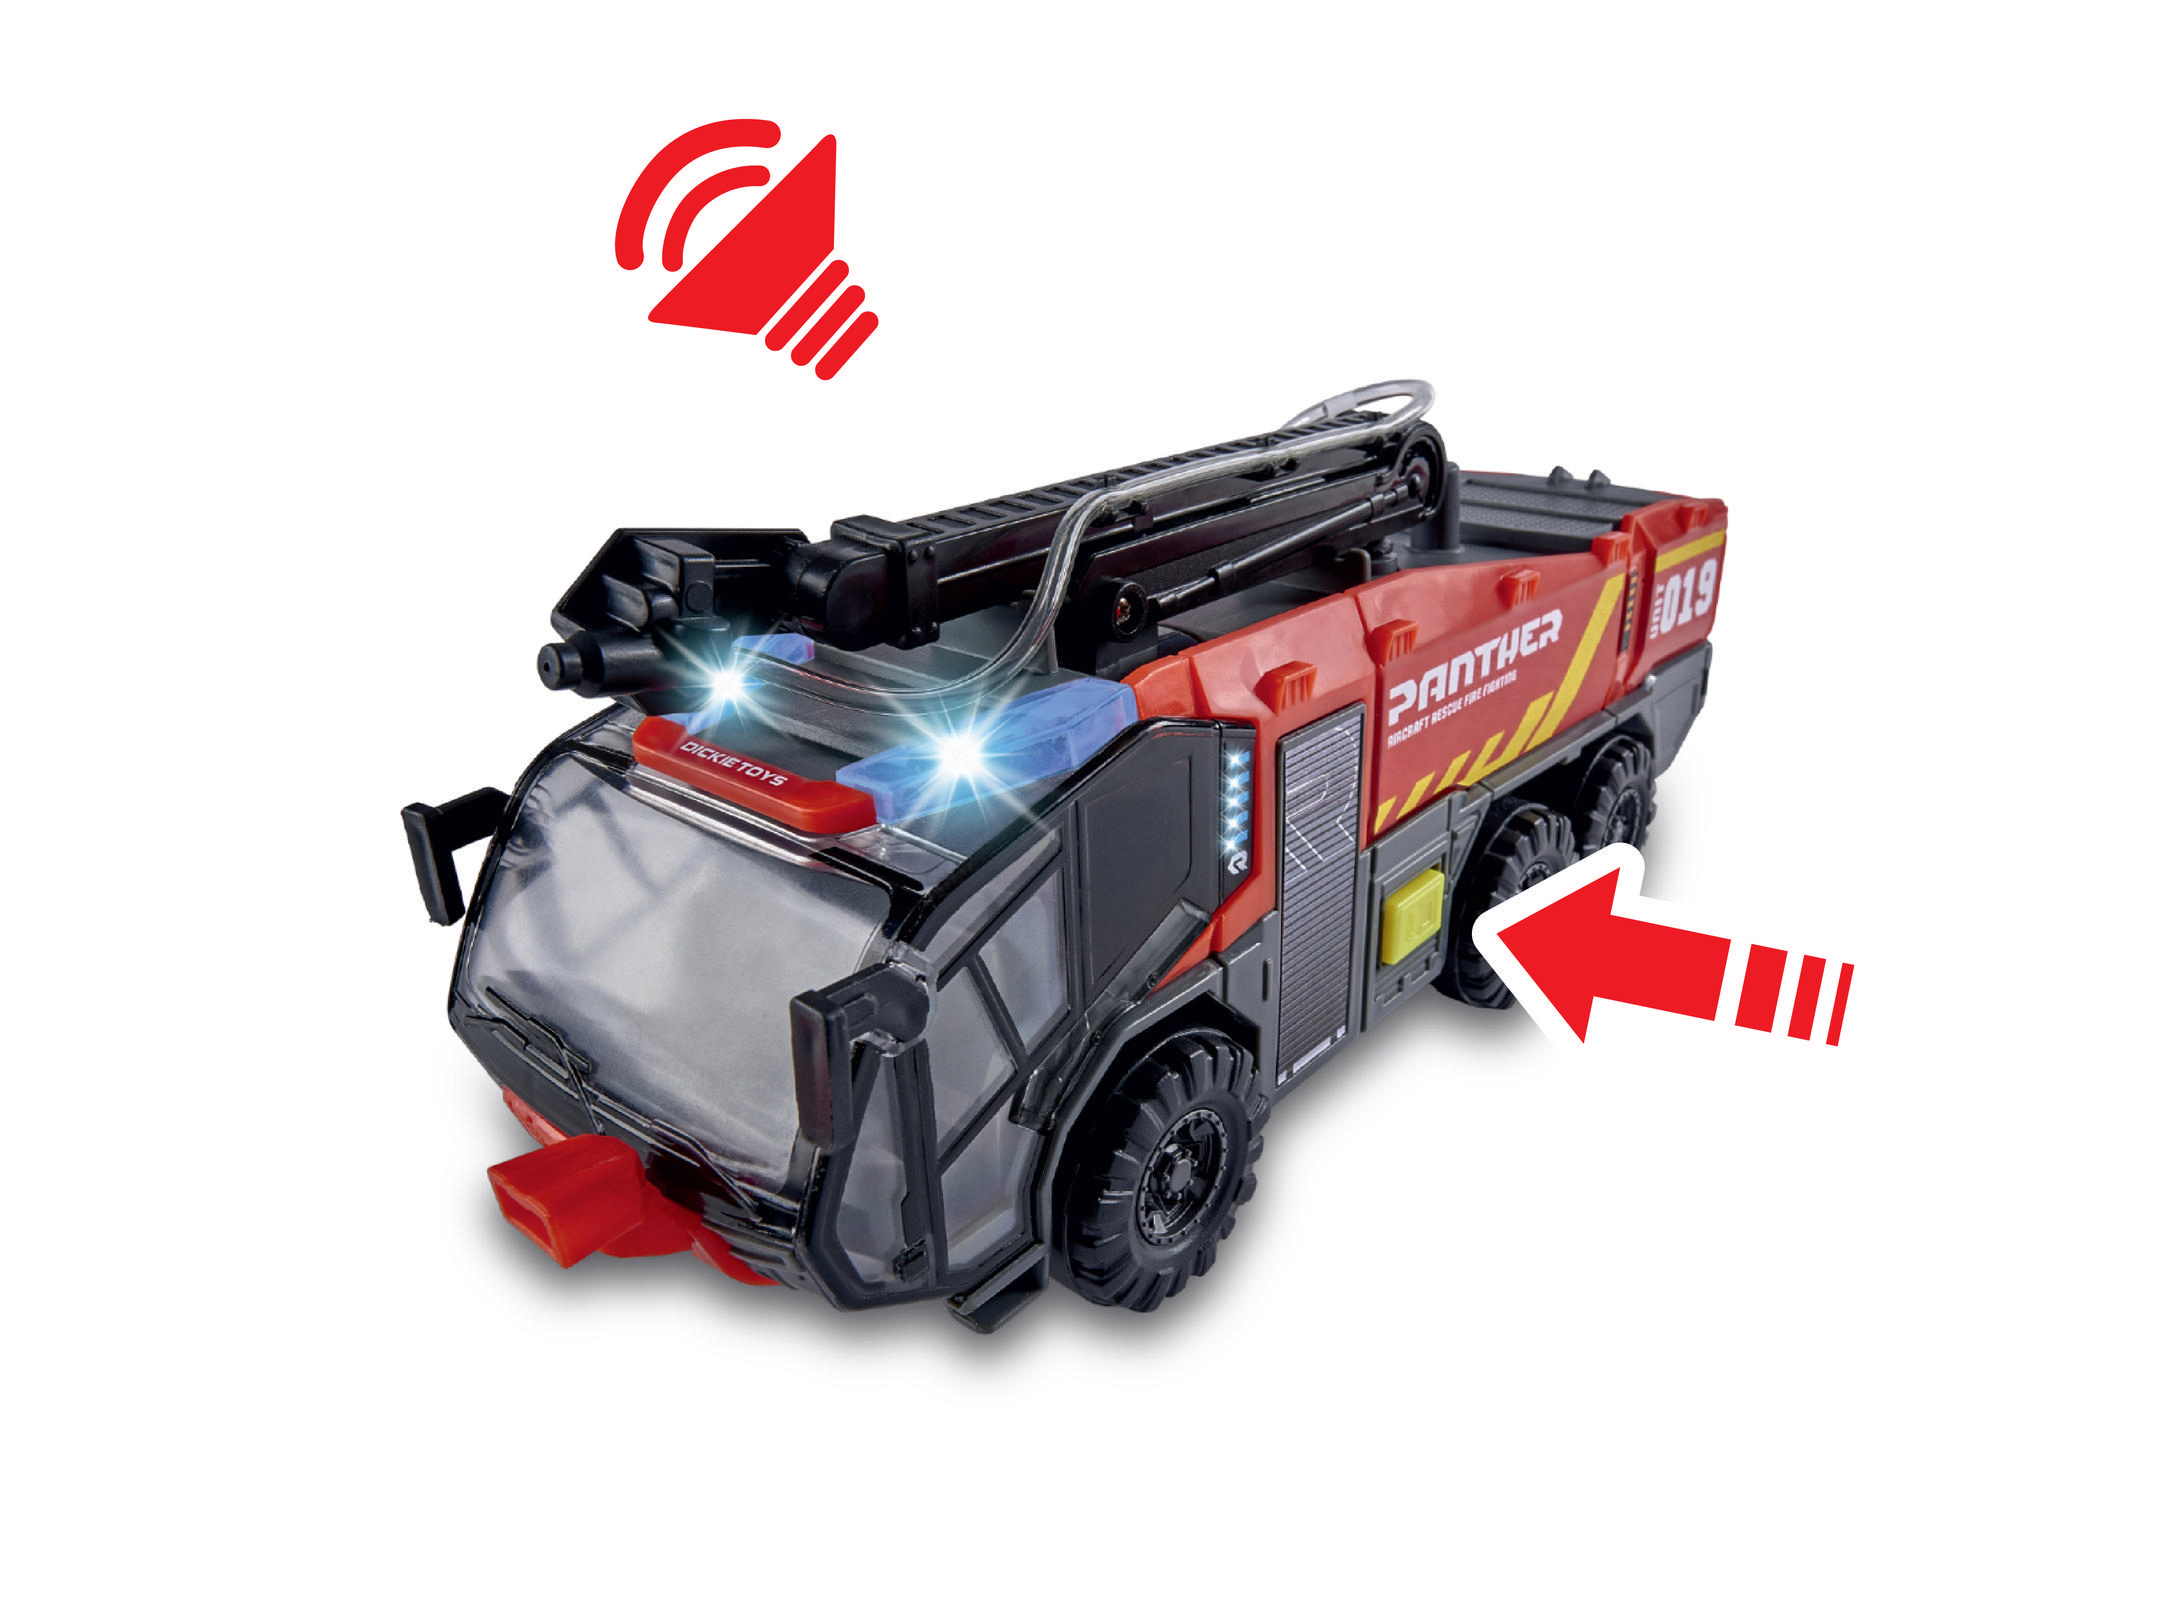 DICKIE-TOYS Flughafenfeuerwehr, mit mit Länge: Löscharm Rot Spielzeugtruck Spielzeugauto Wasserspritzfunktion, beweglicher cm 24 Freilauf